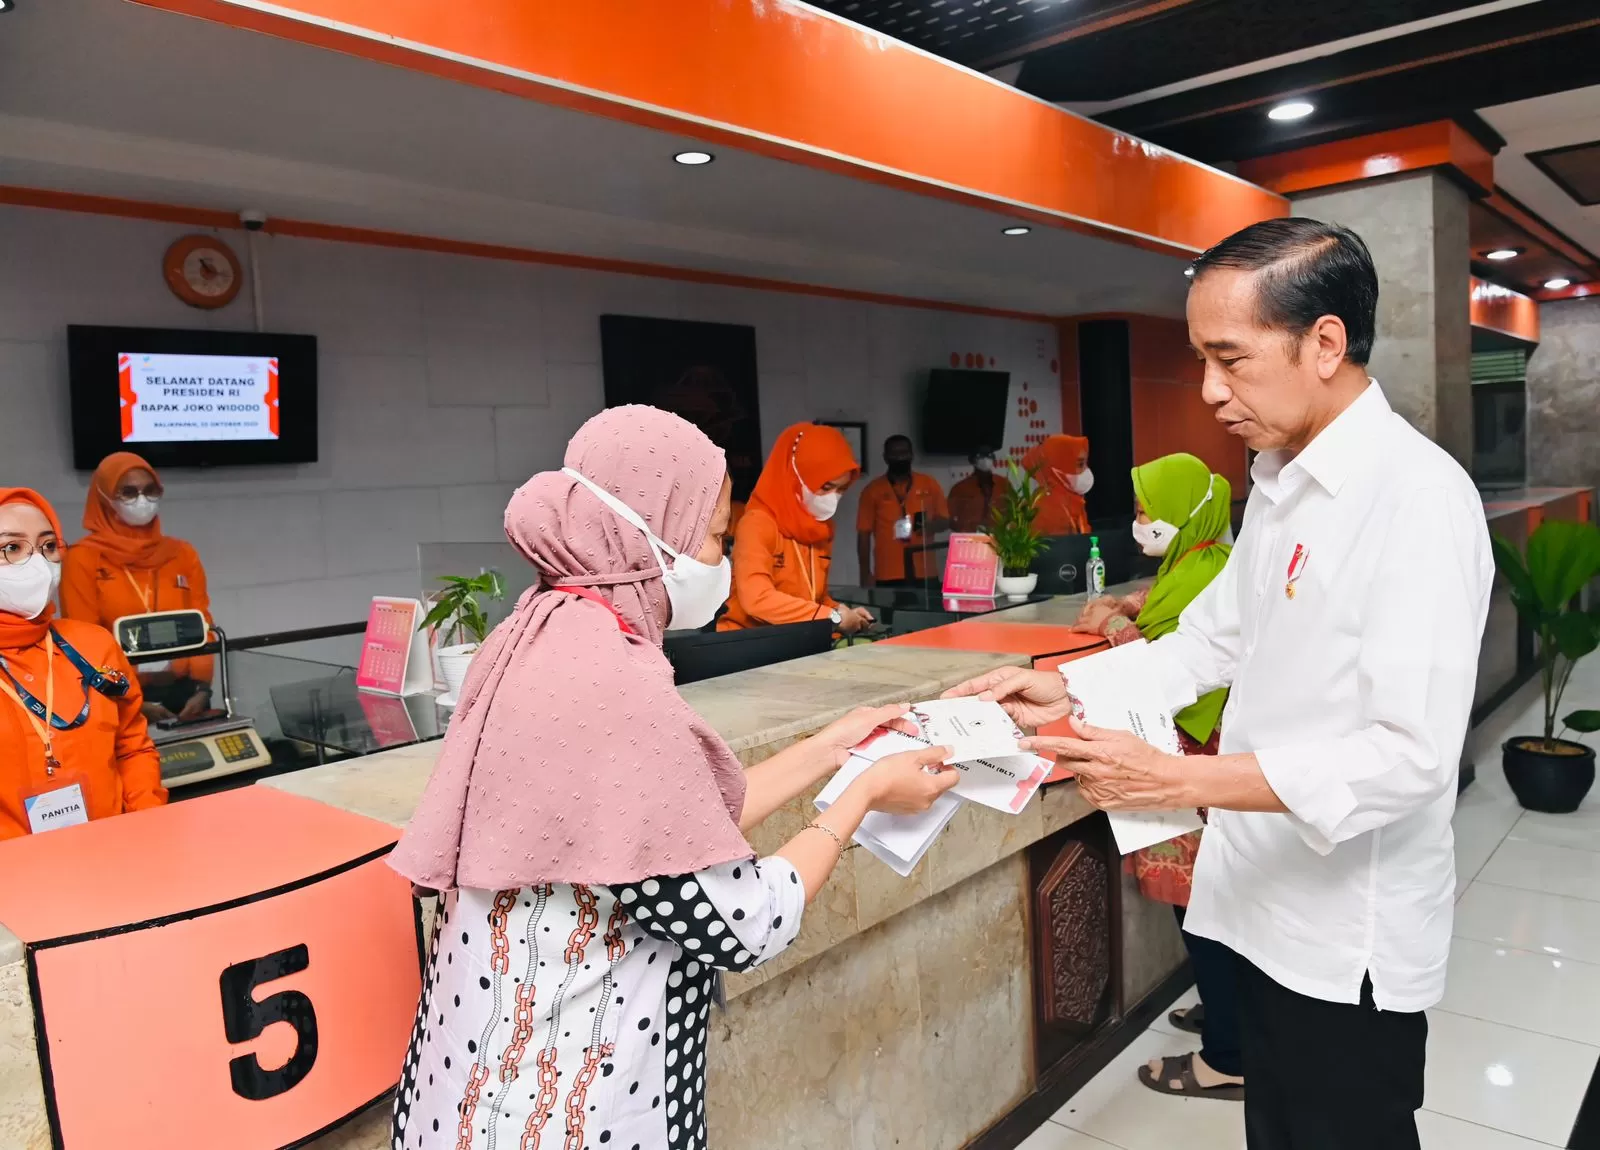 Prabowo Gunakan Fasilitas Negara untuk Kampanye di Padang, Terbongkar Lewat Unggahan Andre Rosiade